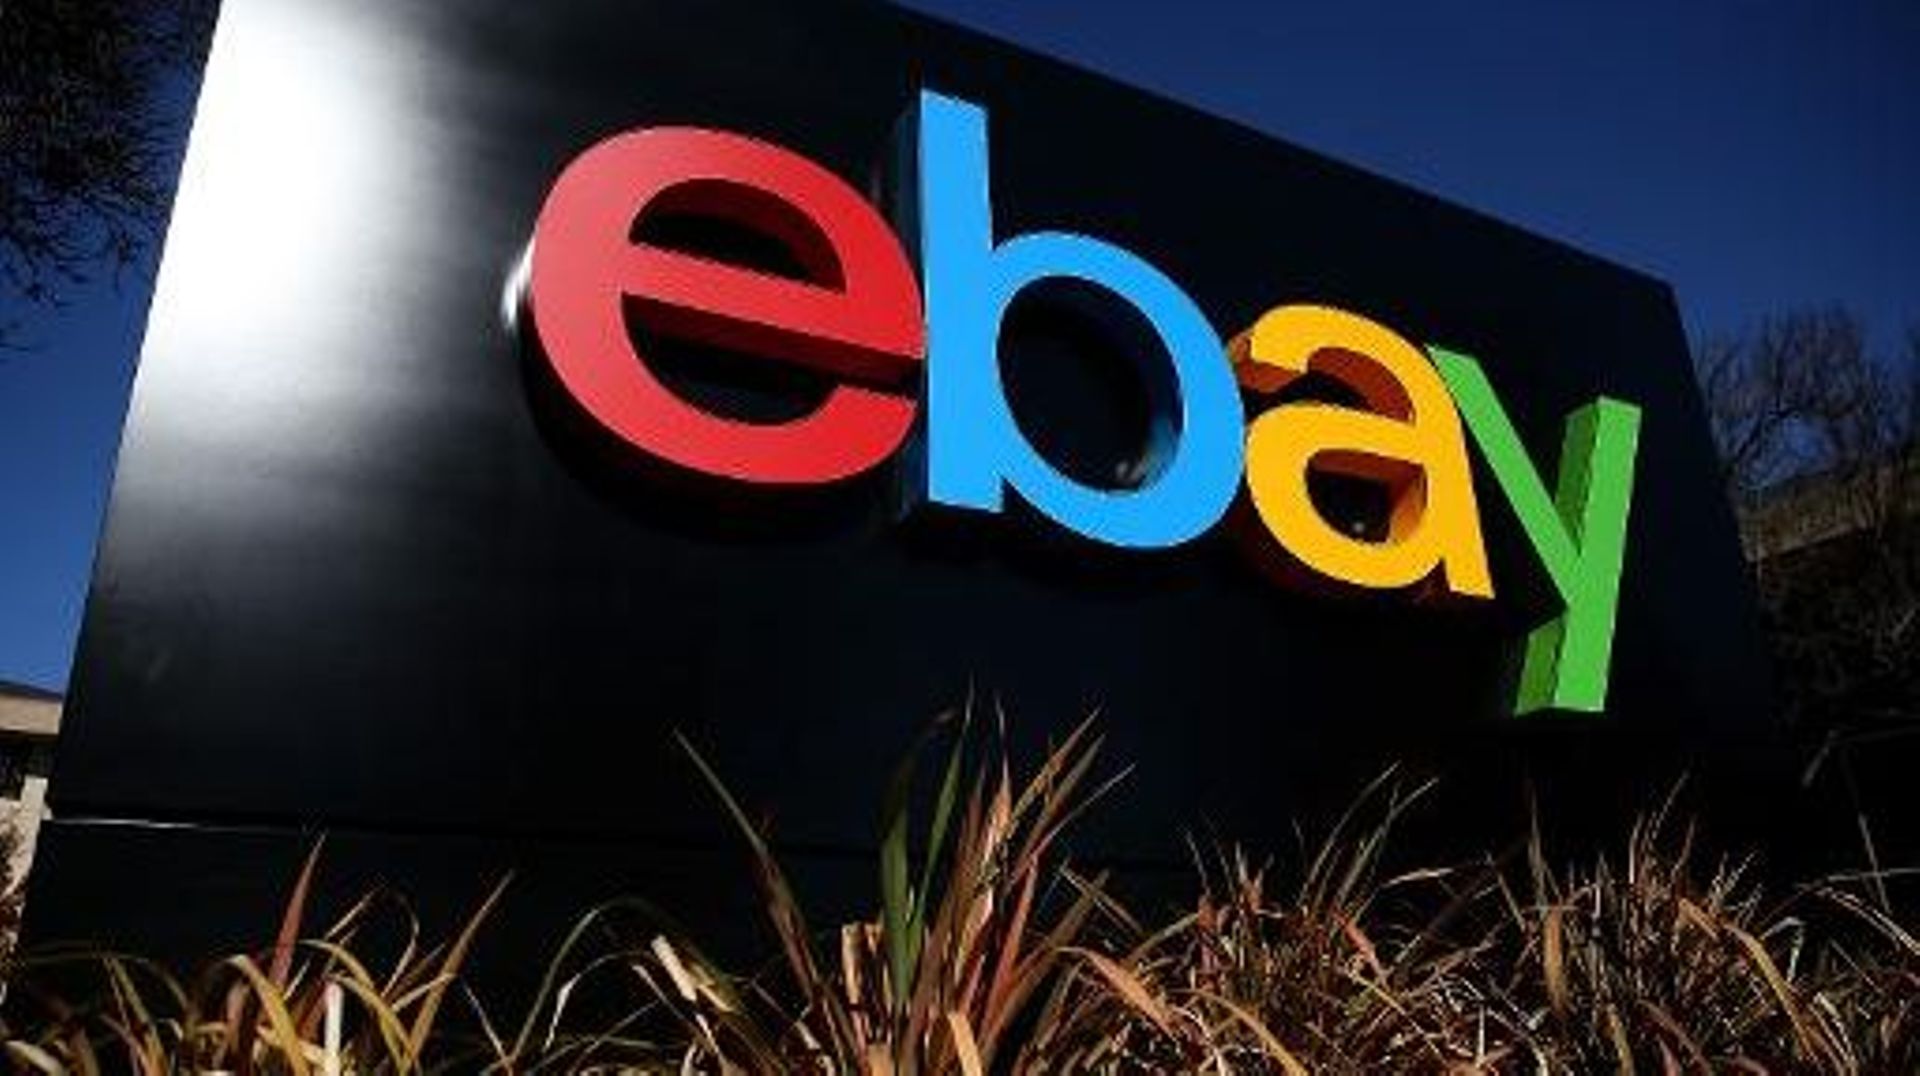 Le logo de eBay devant le siège social du groupe en Californie, le 22 janvier 2014